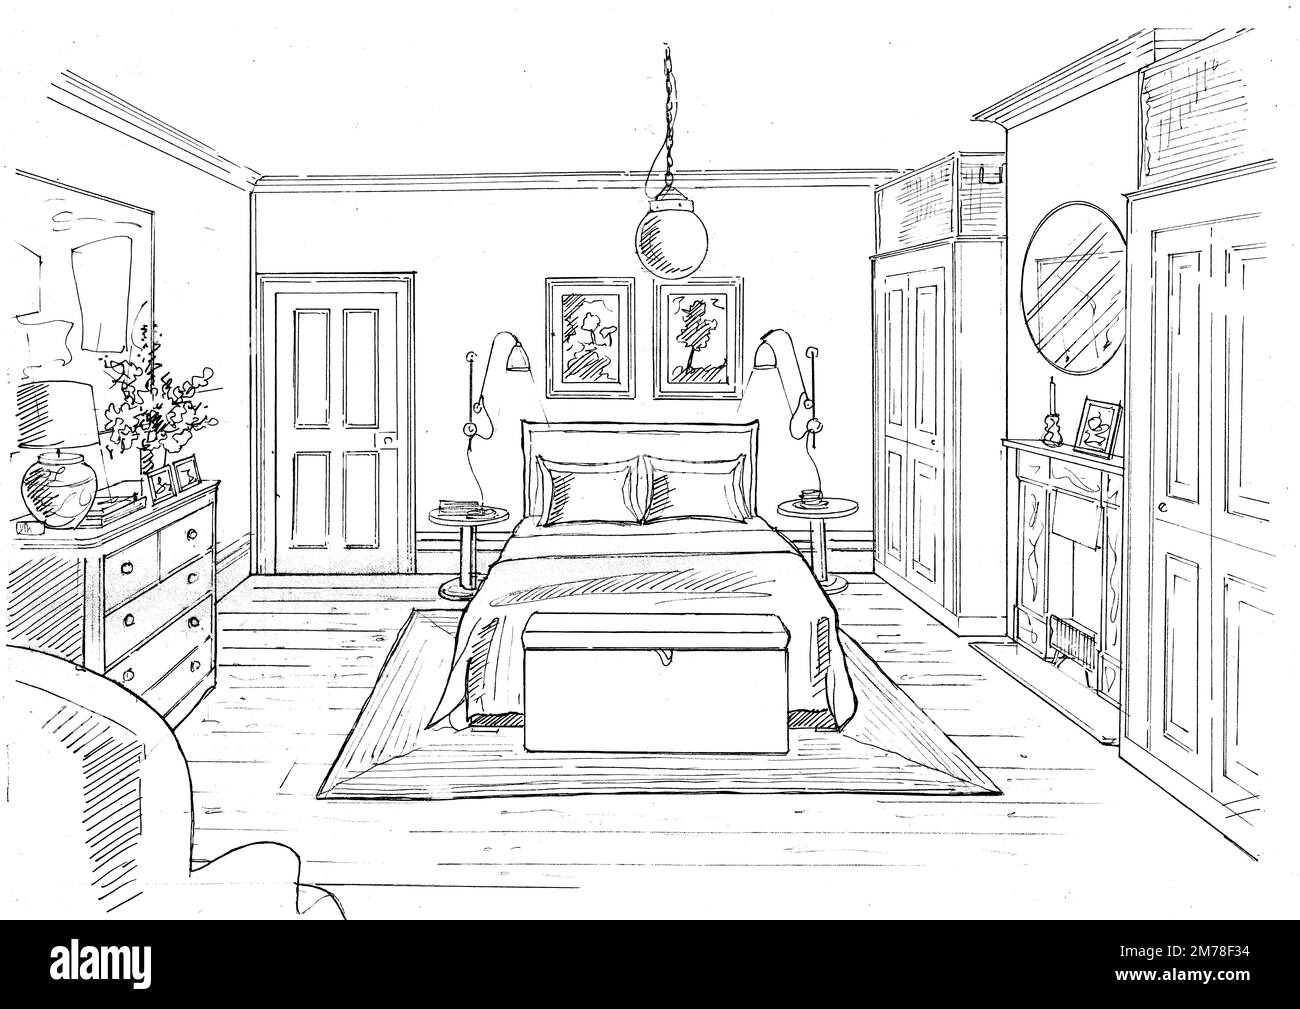 Schwarz-weiße Skizze eines Schlafzimmers auf weißem Hintergrund. Stockfoto